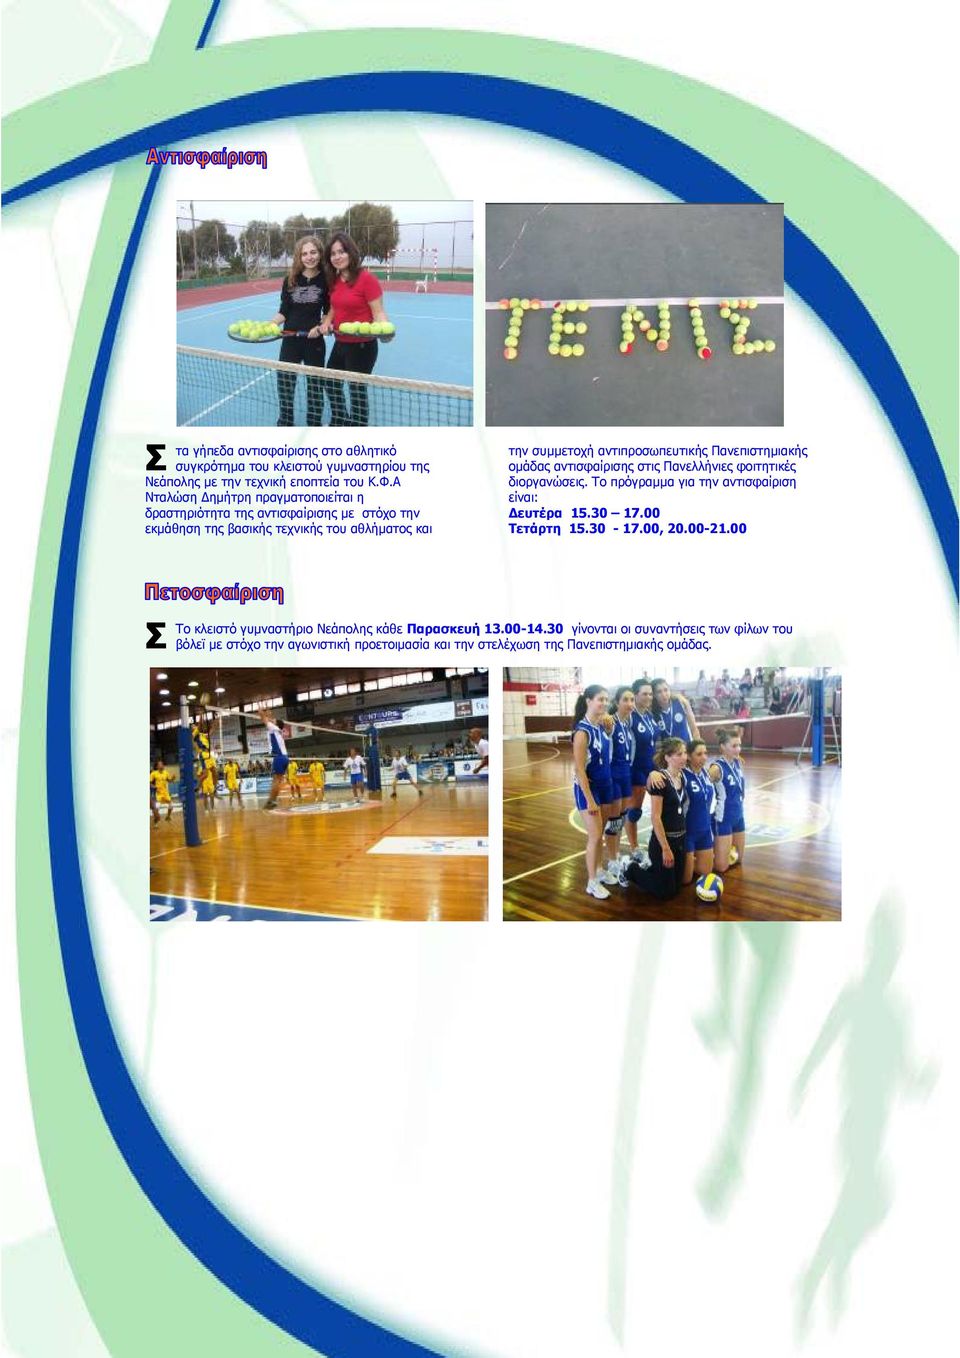 Πανεπιστημιακής ομάδας αντισφαίρισης στις Πανελλήνιες φοιτητικές διοργανώσεις. Το πρόγραμμα για την αντισφαίριση είναι: Δευτέρα 15.30 17.00 Τετάρτη 15.30-17.